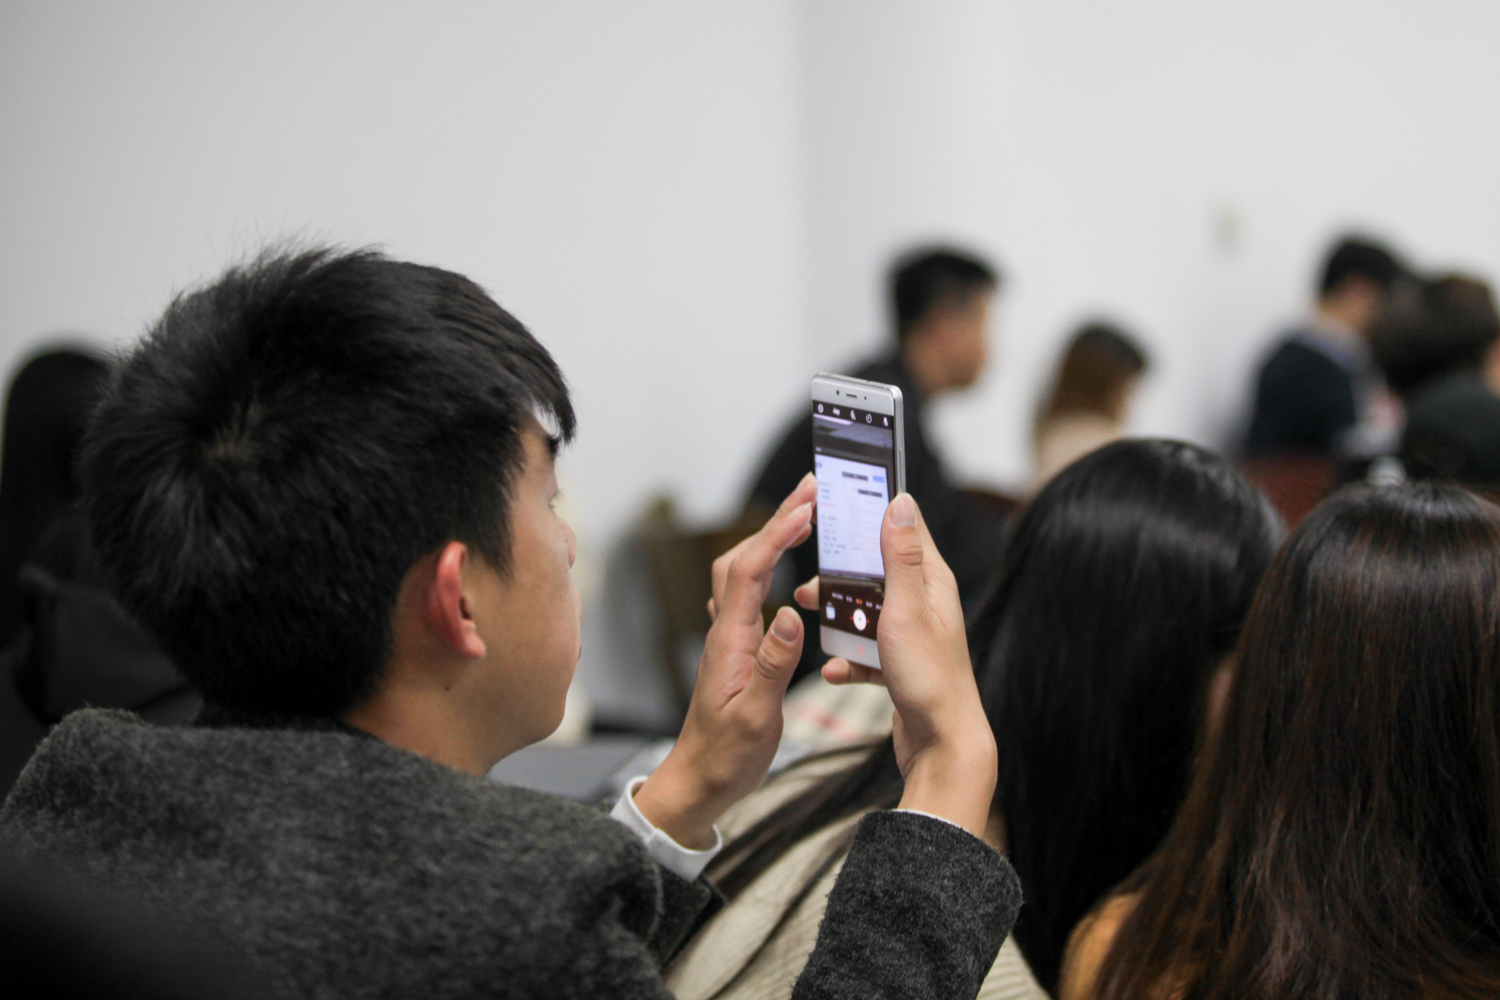 4 一名学生用手机拍照记录讲座内容 李超 摄